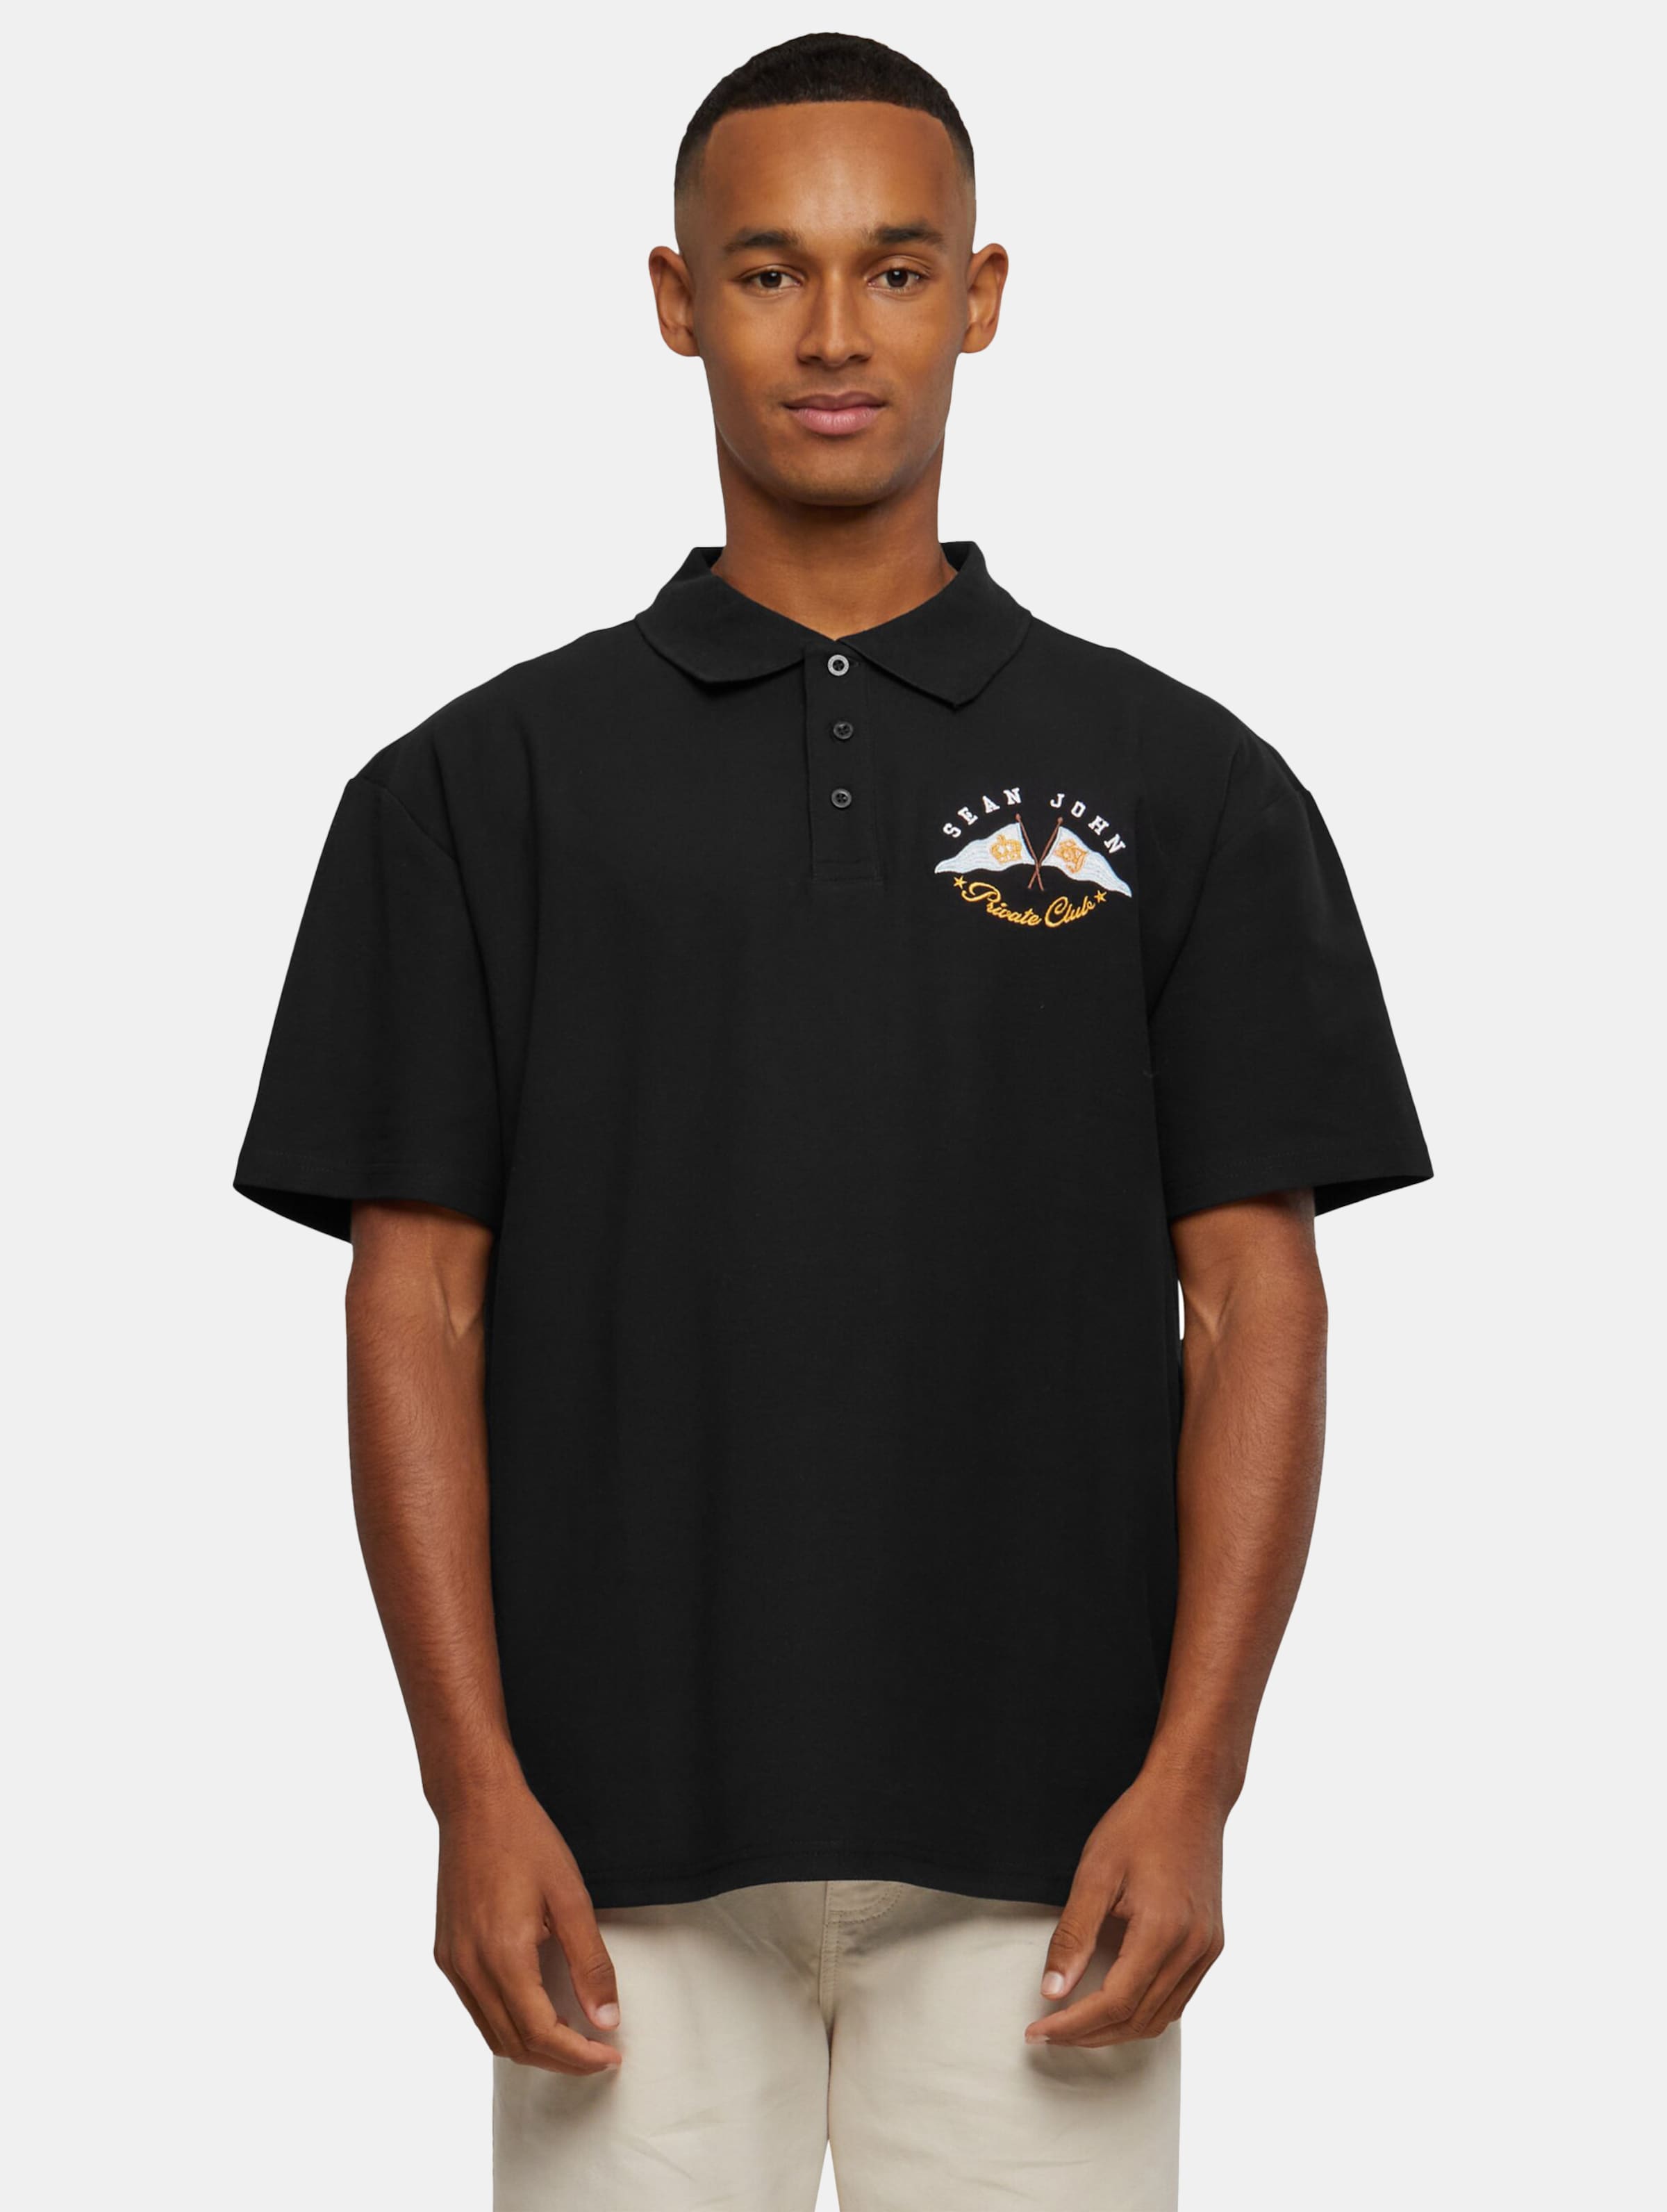 Sean John JM232-020-01 SJ Yacht Club Polo Shirt Männer,Unisex op kleur zwart, Maat XL